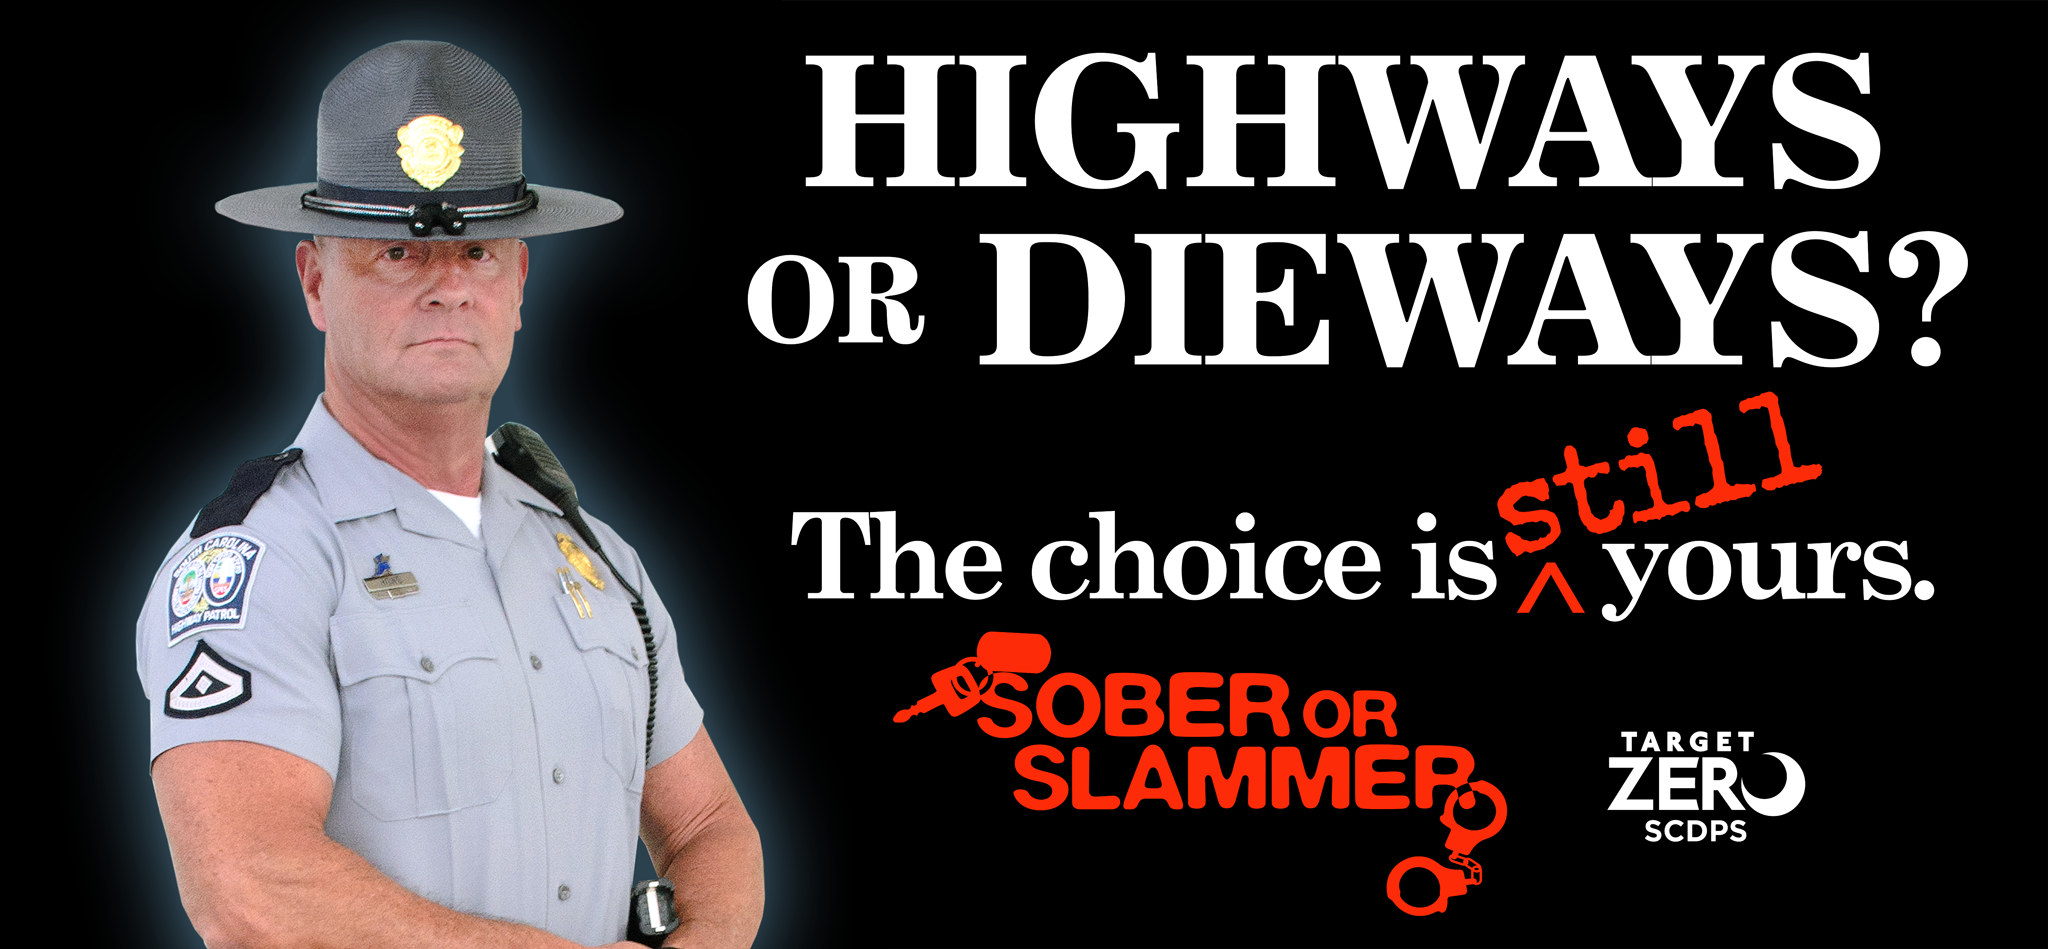 highways-or-dieways_ad_hovis_1